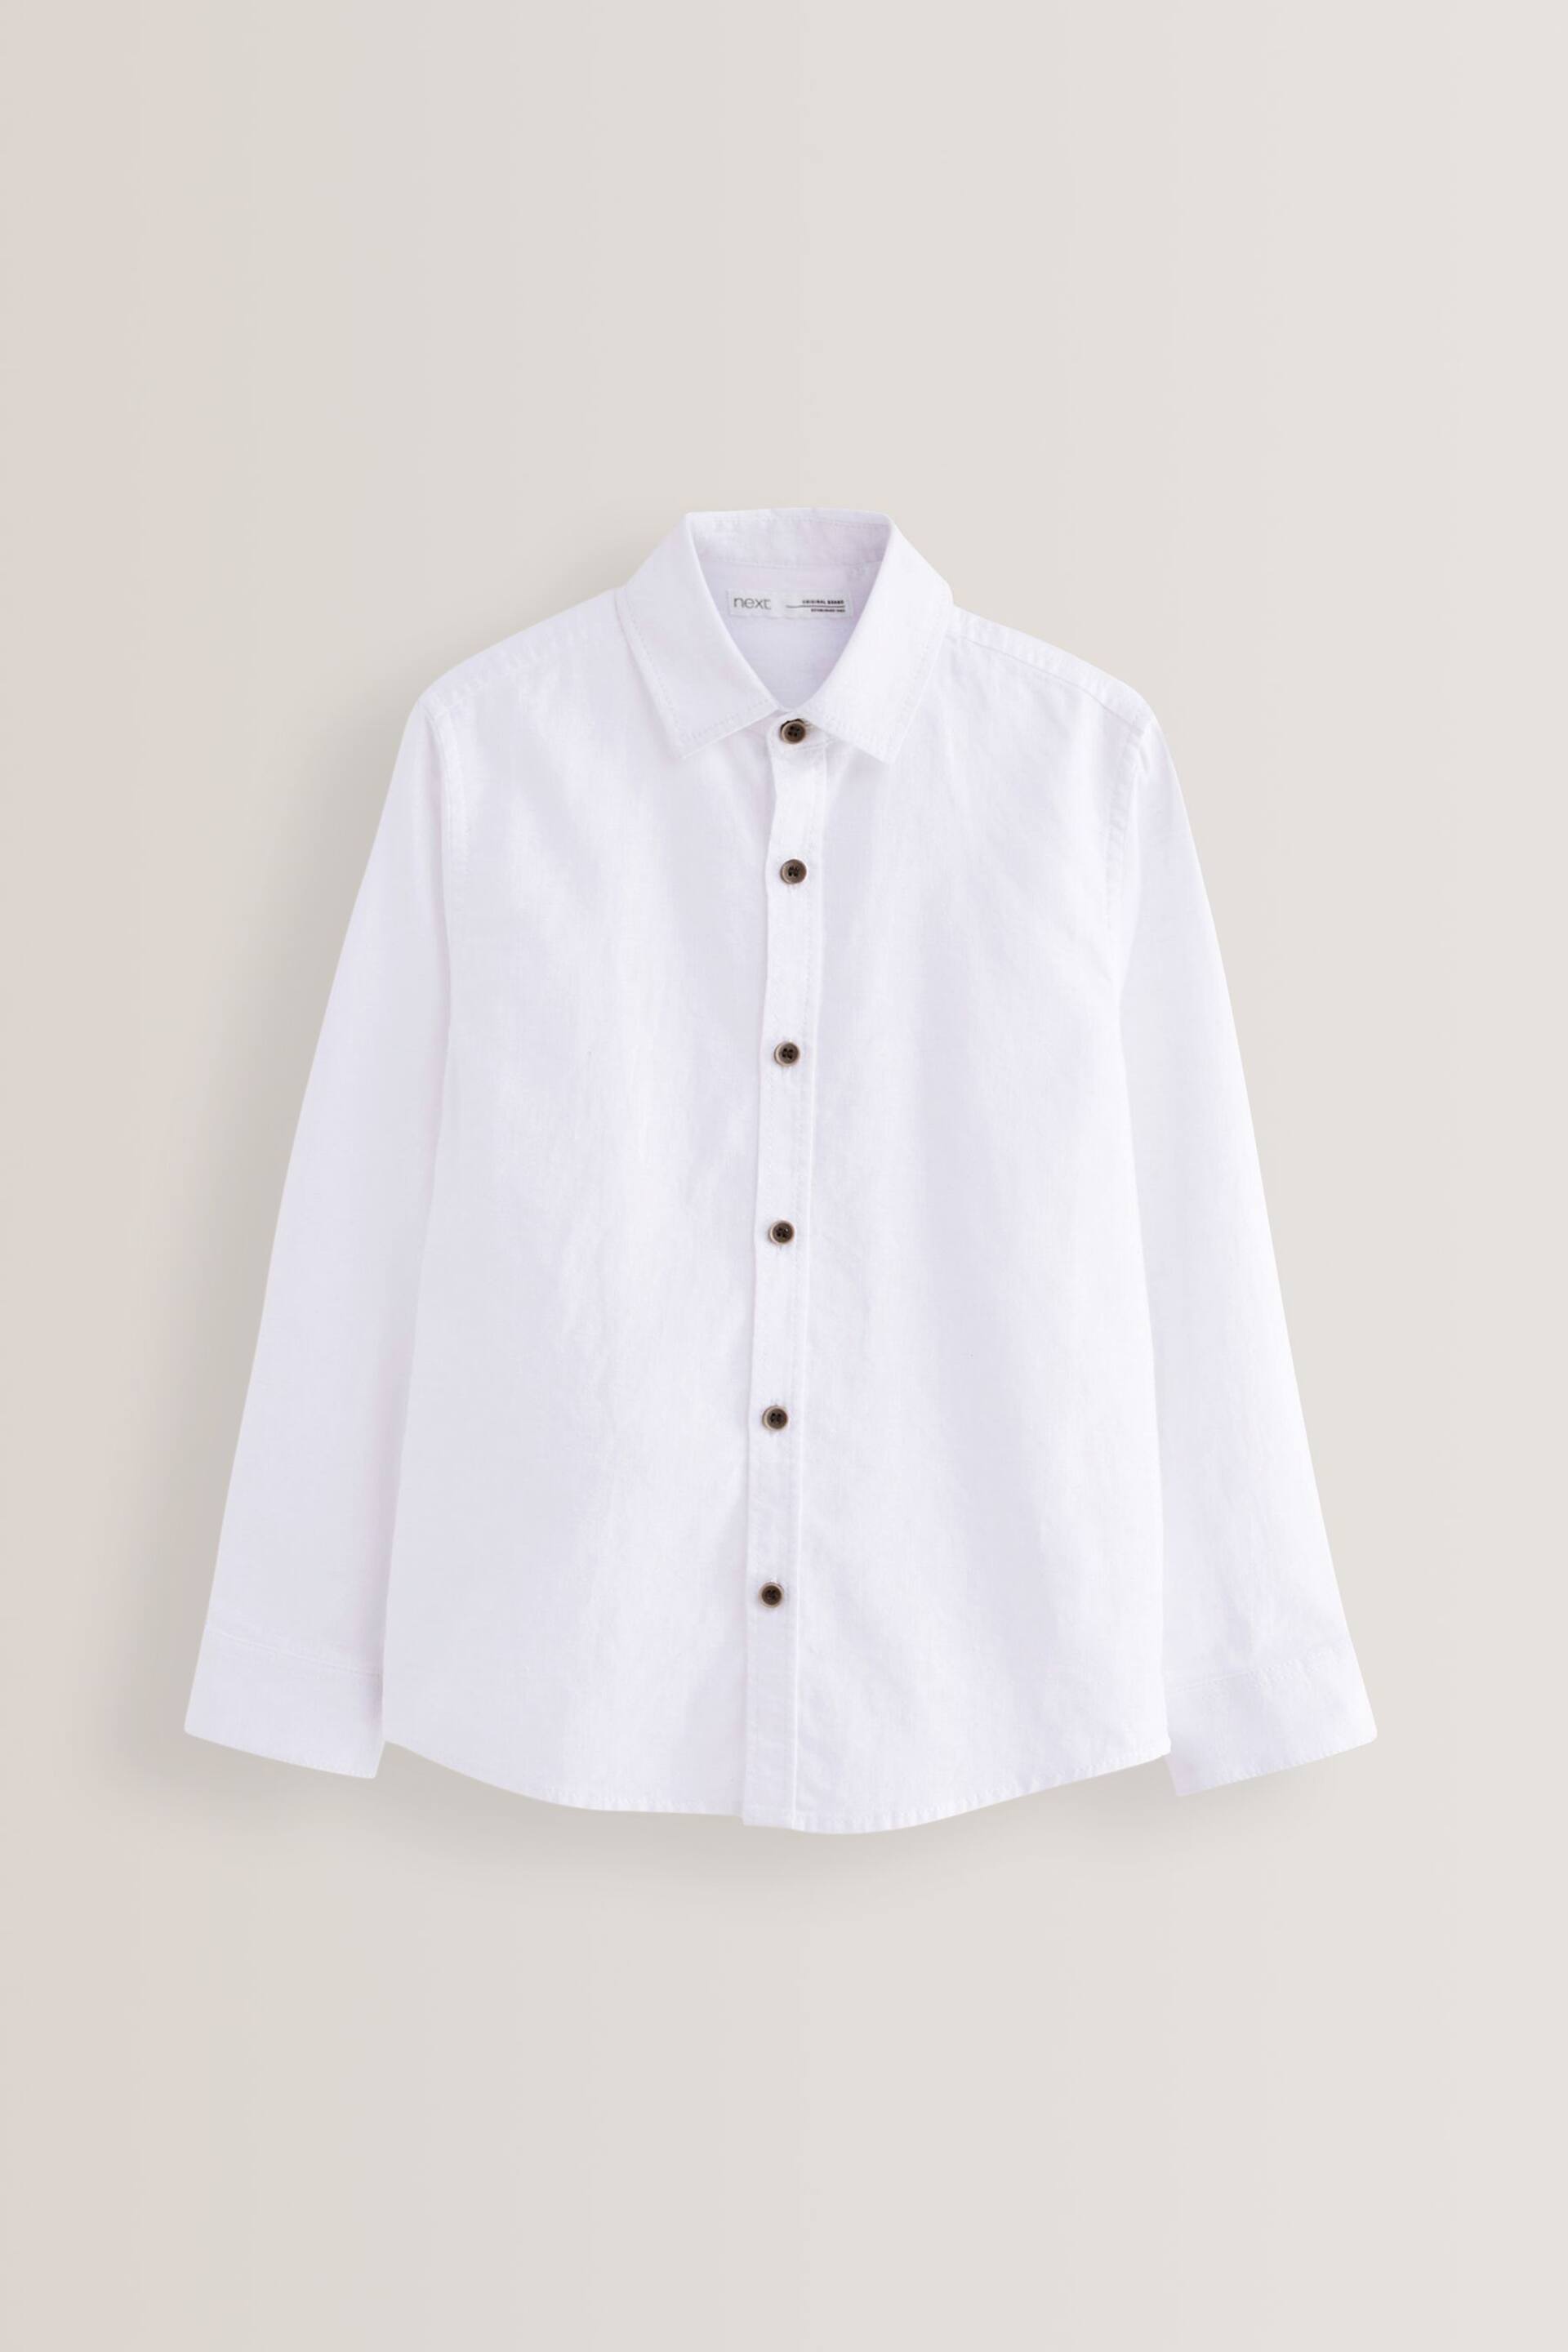 White Long Sleeve Linen Blend Shirt (3-16yrs) - Image 1 of 2